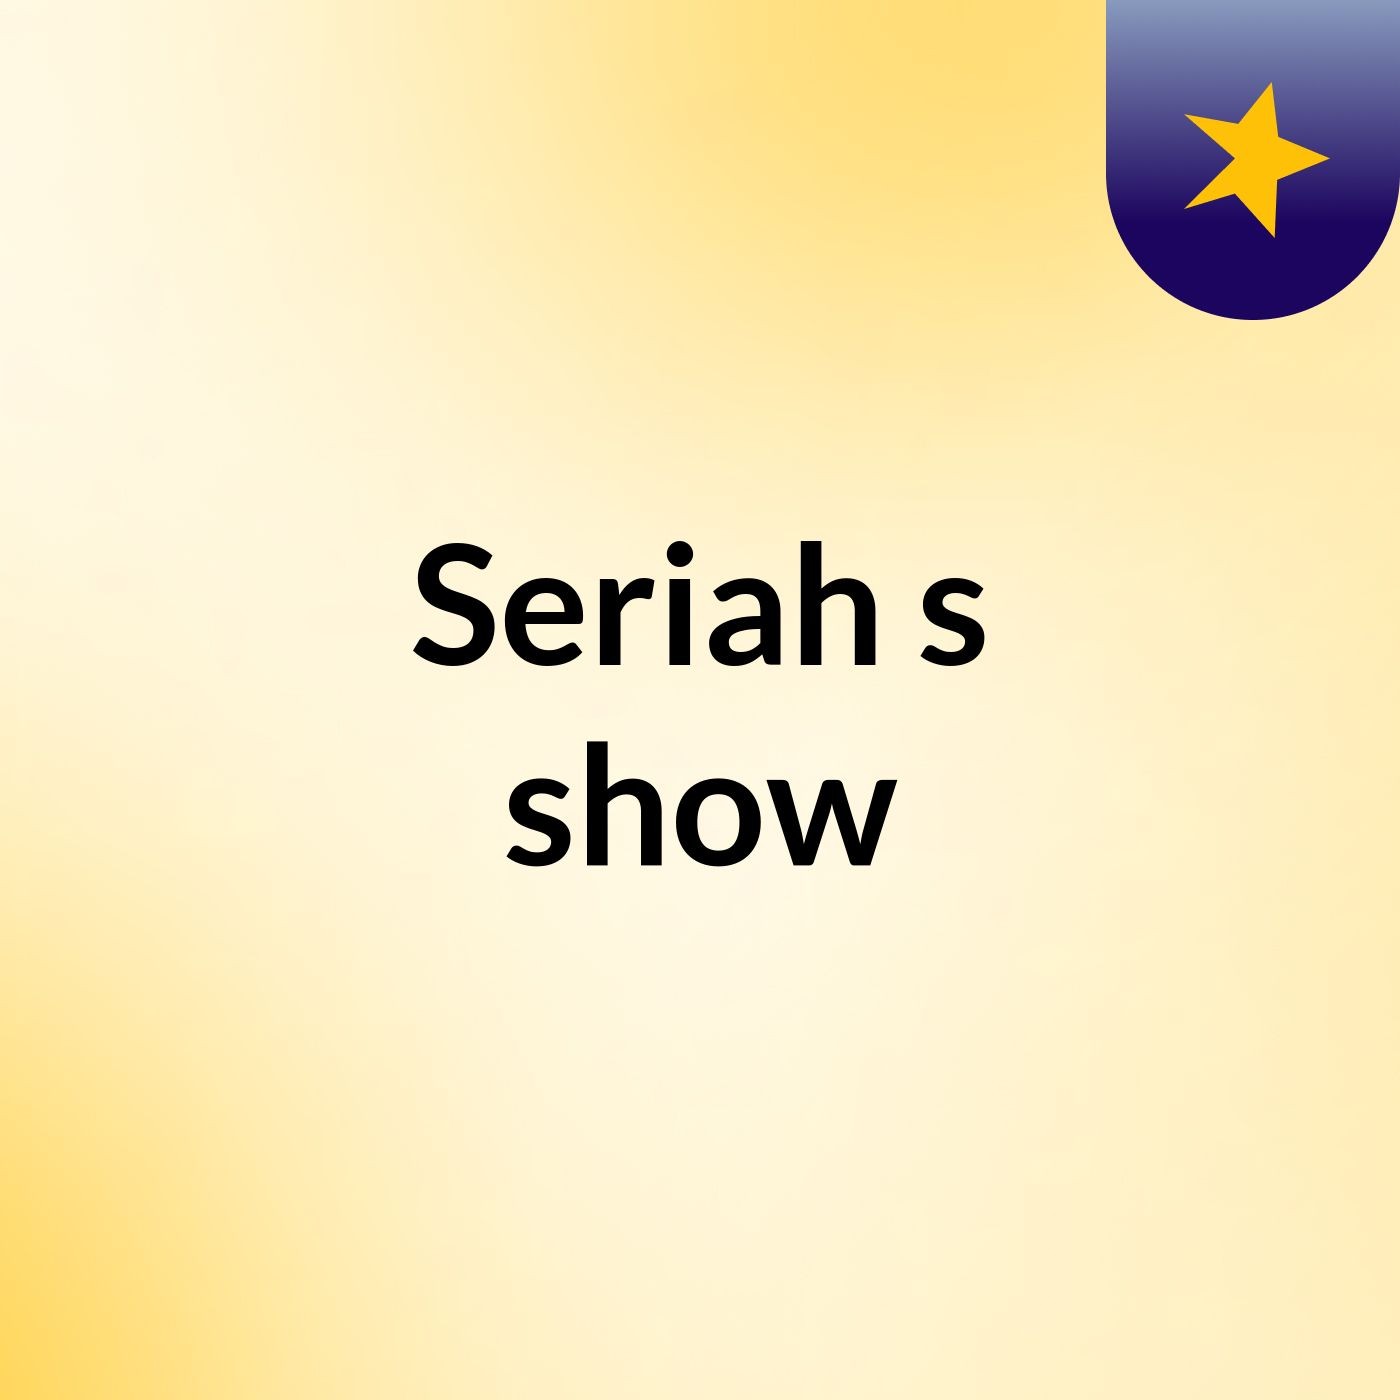 Seriah's show